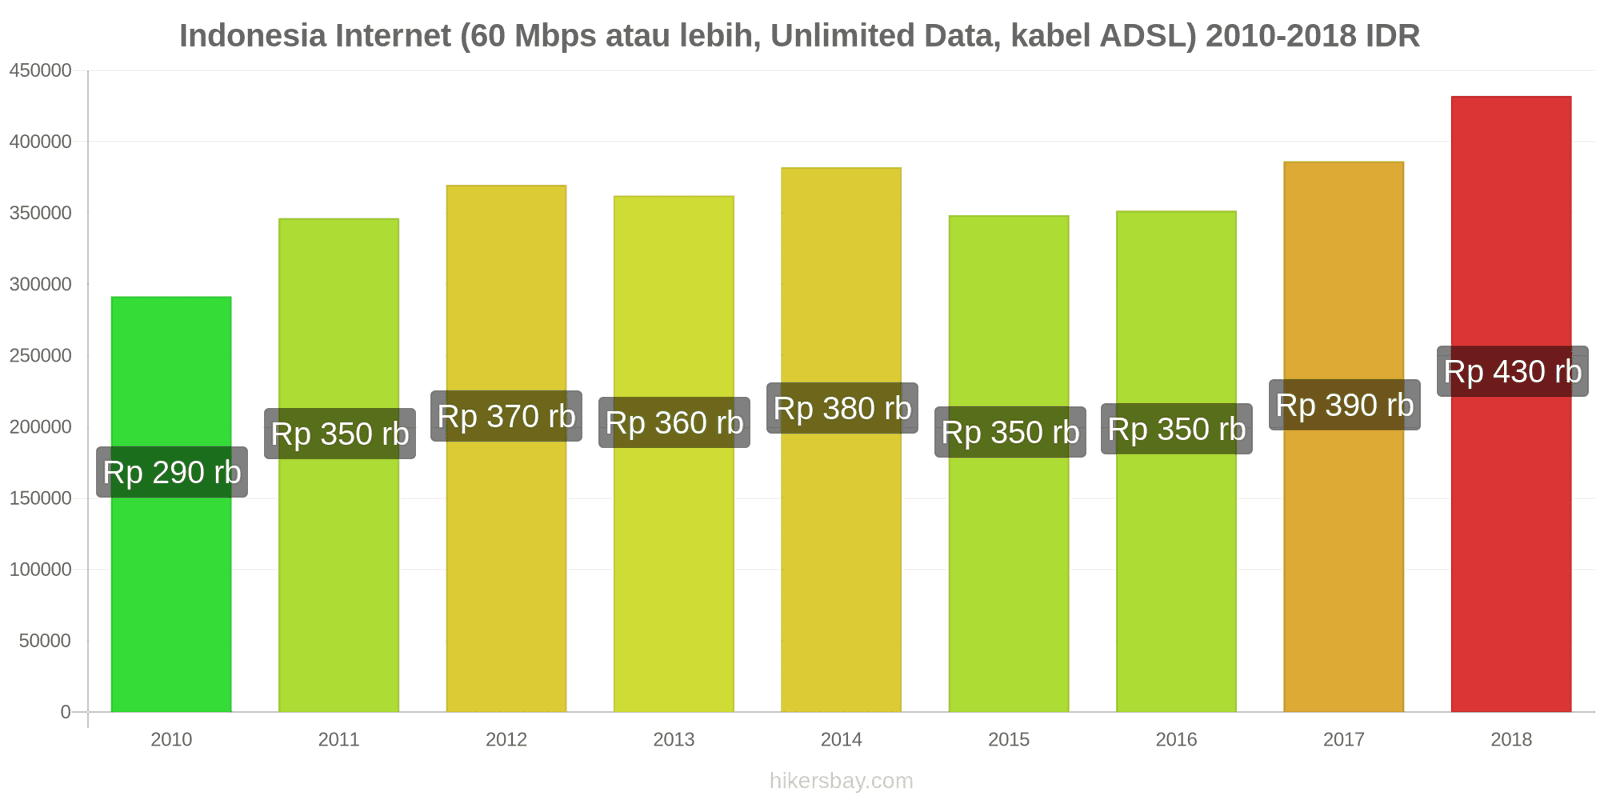 Indonesia perubahan harga Internet (60 Mbps atau lebih, data tak terbatas, kabel/ADSL) hikersbay.com